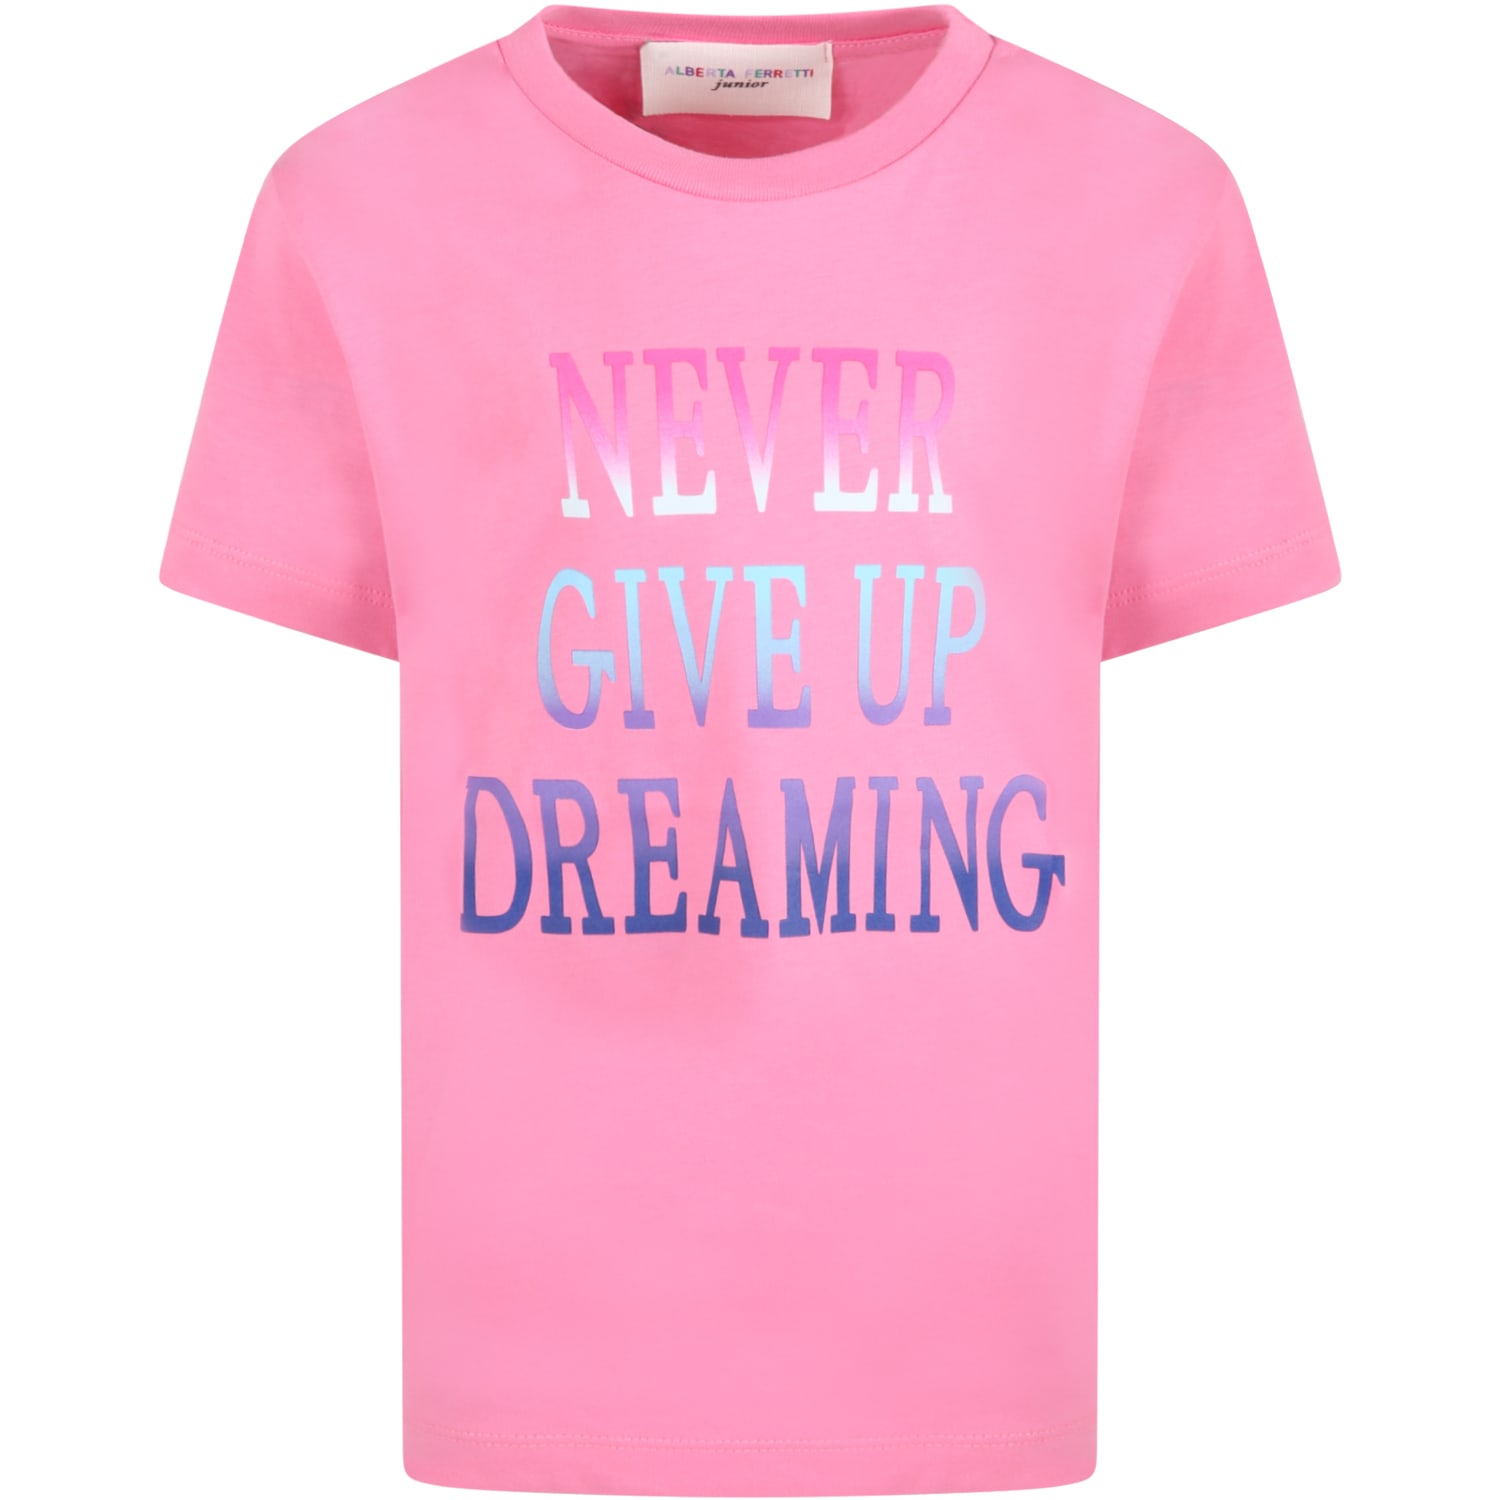 Alberta Ferretti Fuchsia T-shirt For Girl With Multicolor Writing